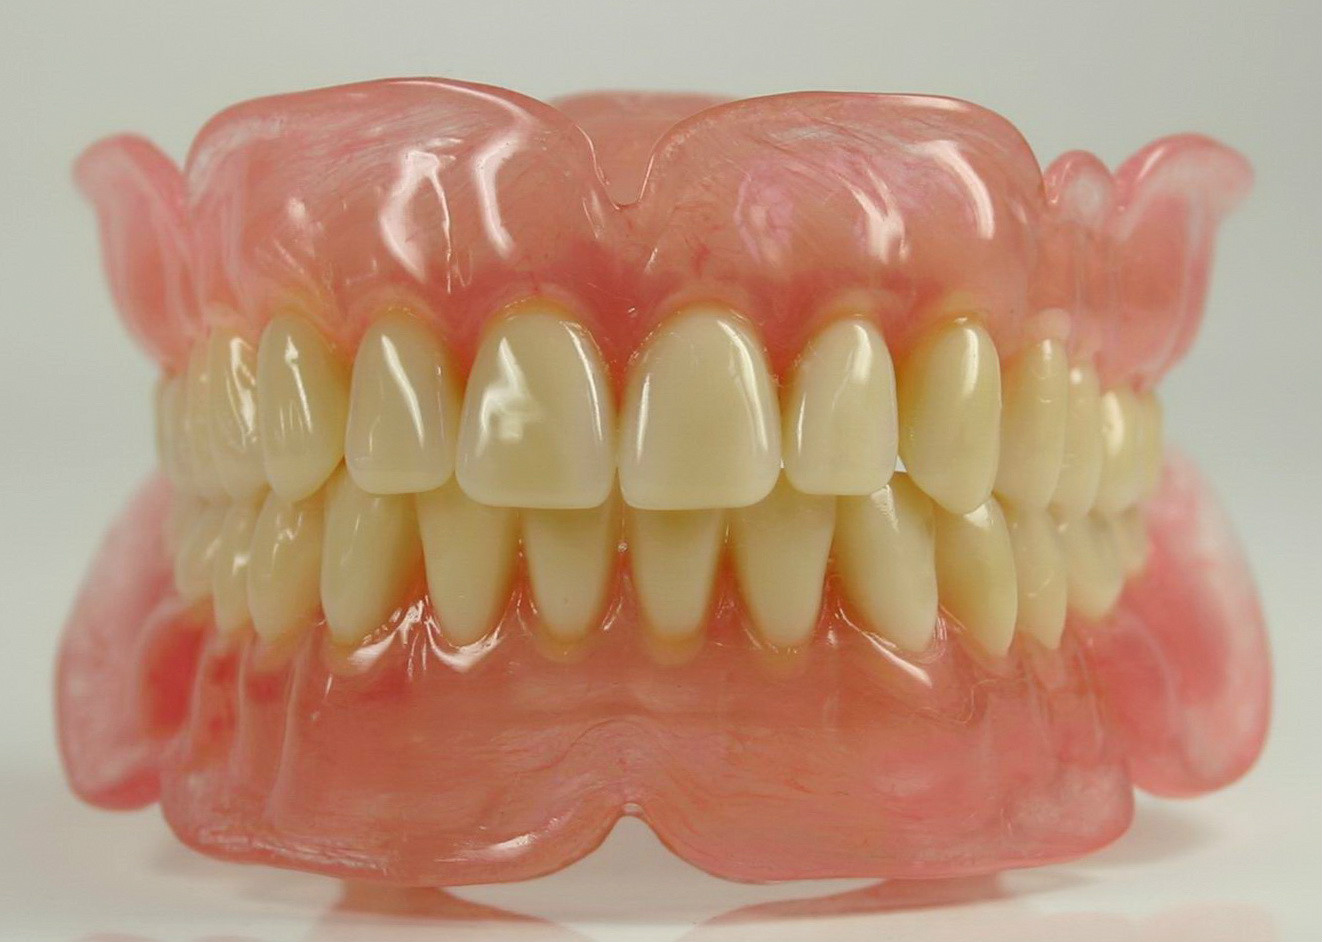 全口活动假牙，BPS吸附性义齿，全口种植牙哪个修复方式好？全口种植牙有哪几种技术？老年人种牙需要注意哪些问题？全口牙齿修复盘点！